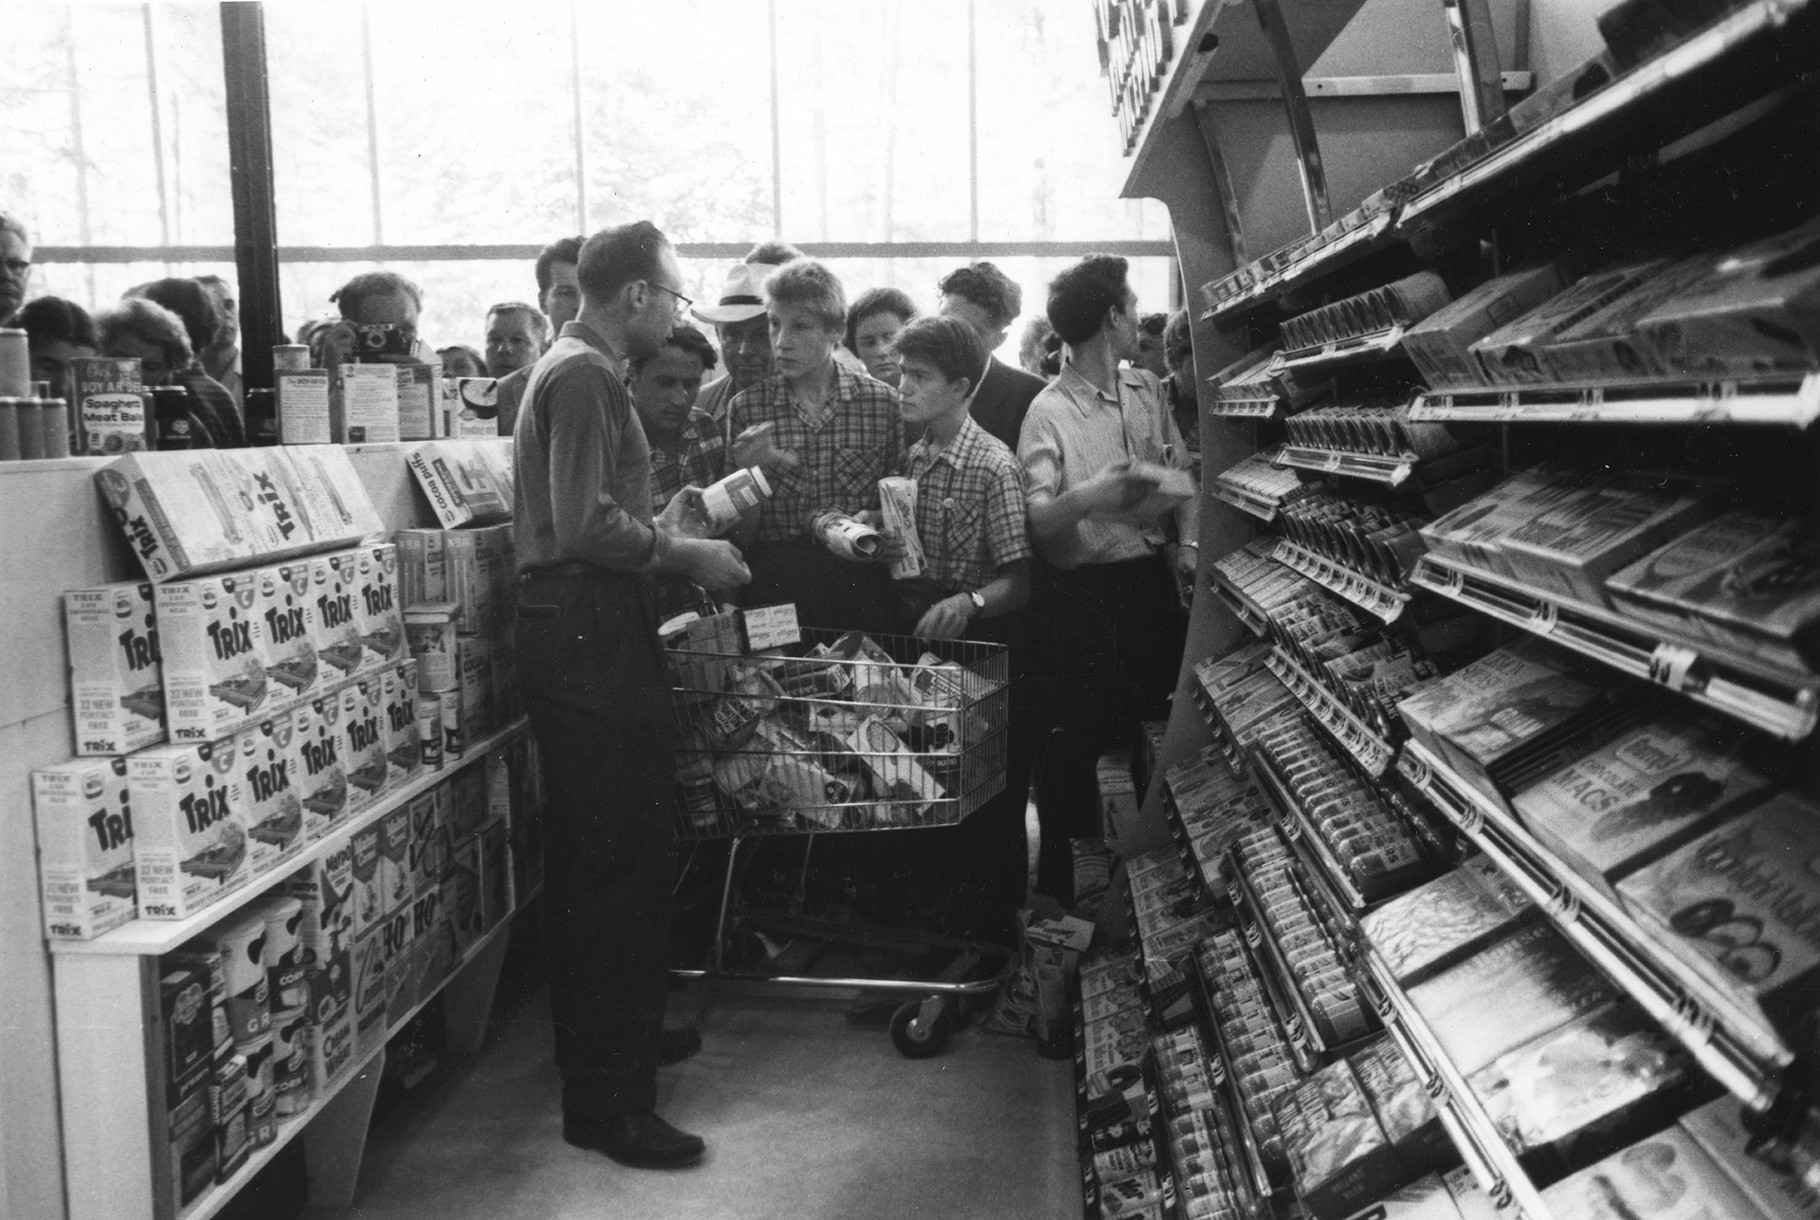 Совјетским посетиоцима изложбе је приказано како изгледа супермаркет.